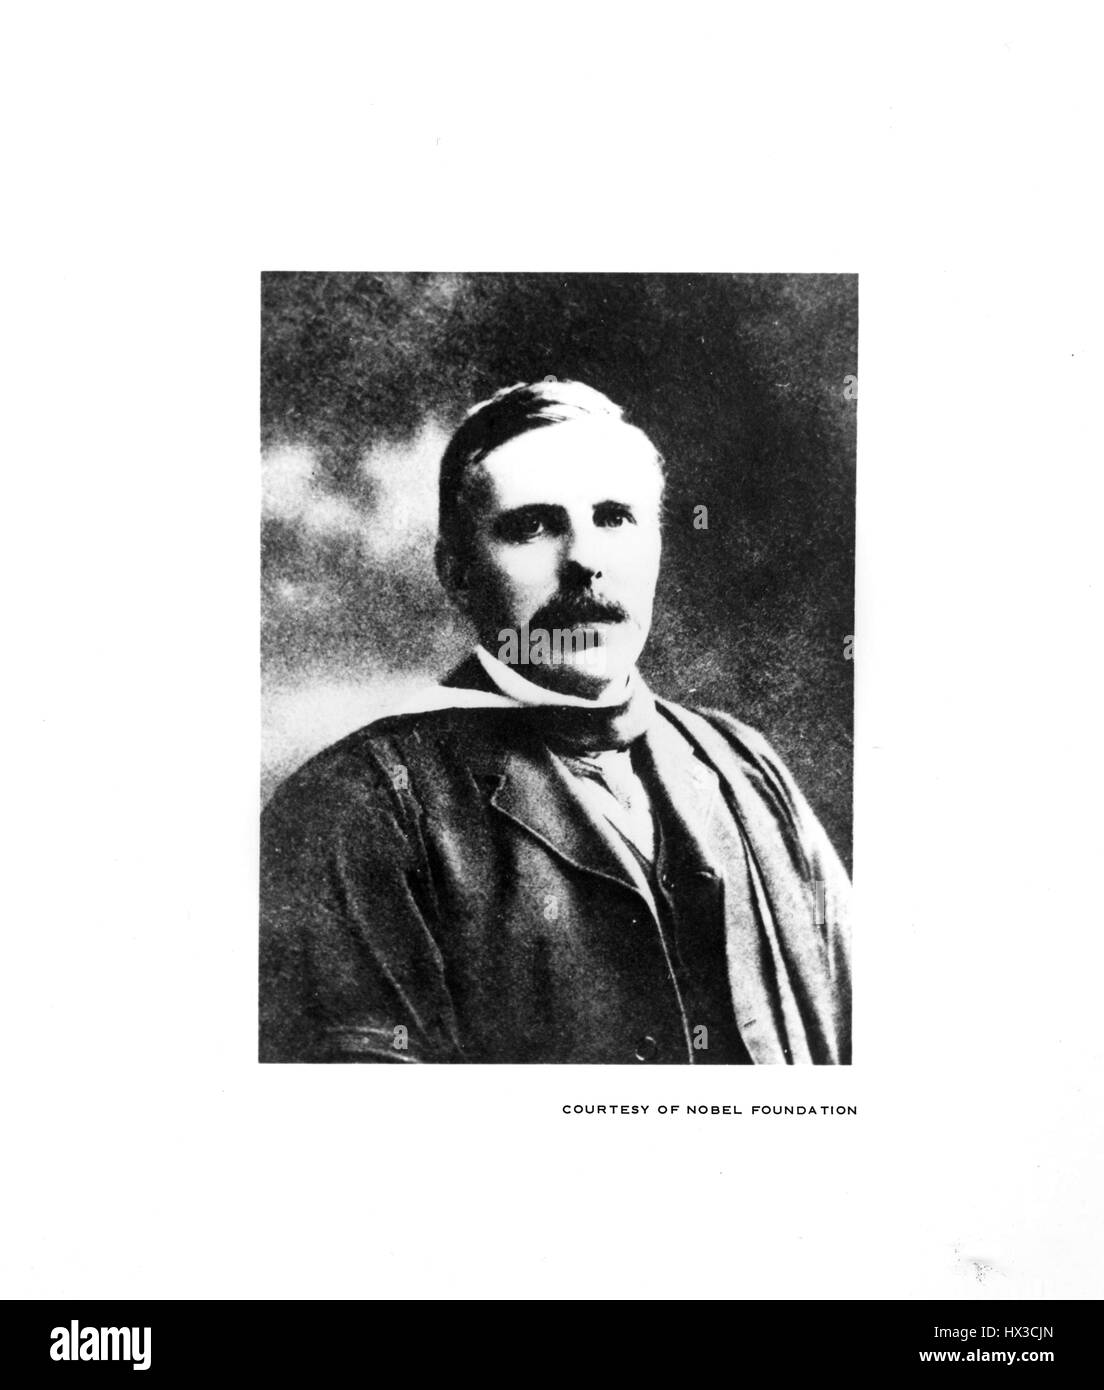 Portrait d'Ernest Rutherford, prix Nobel de chimie et connu comme le père de la physique nucléaire, 1900. Image courtoisie du département américain de l'énergie. Banque D'Images